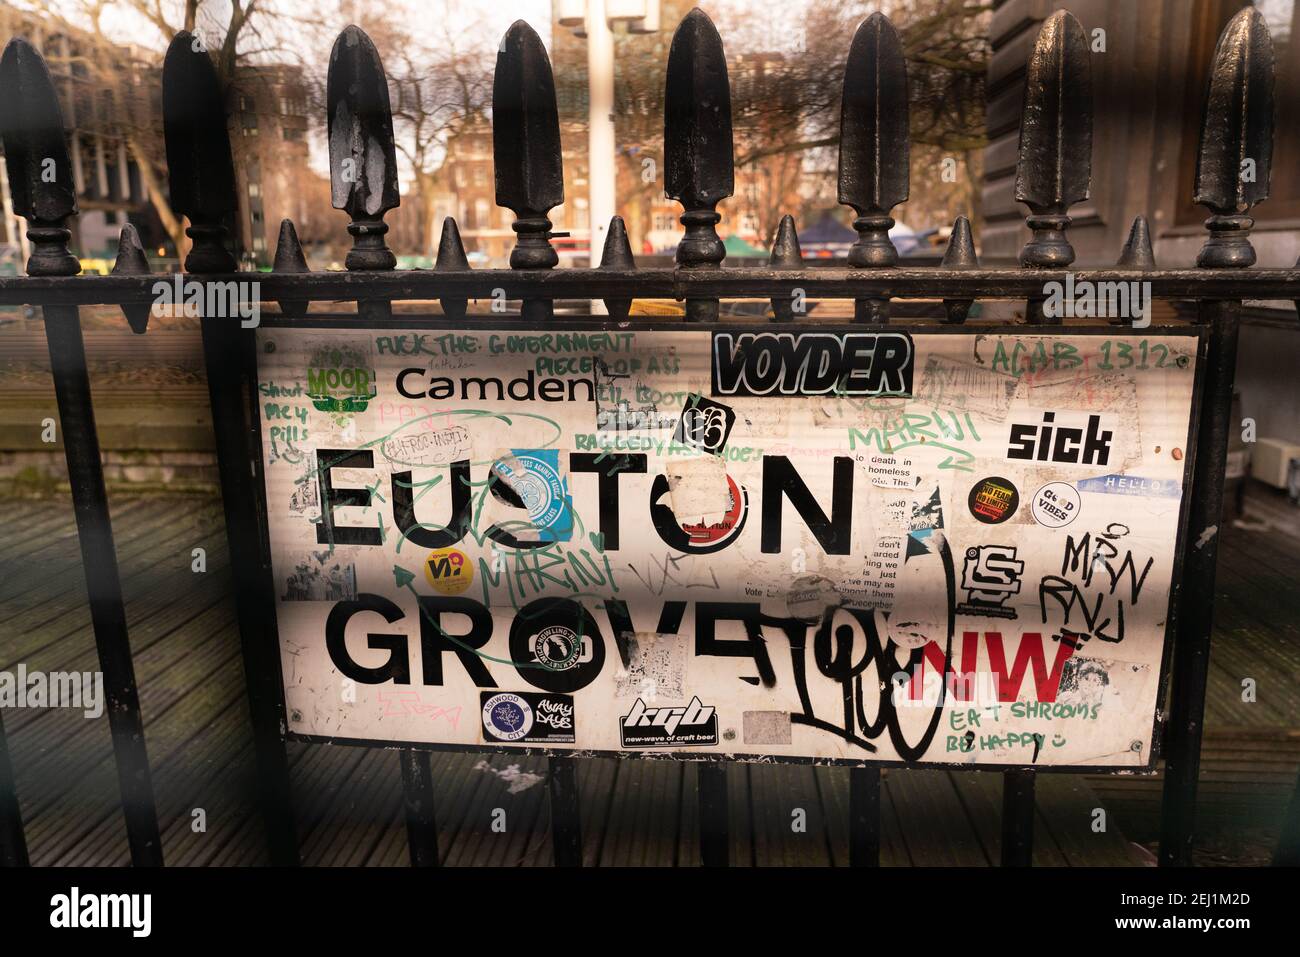 Estación Euston, camden, londres, inglaterra Foto de stock